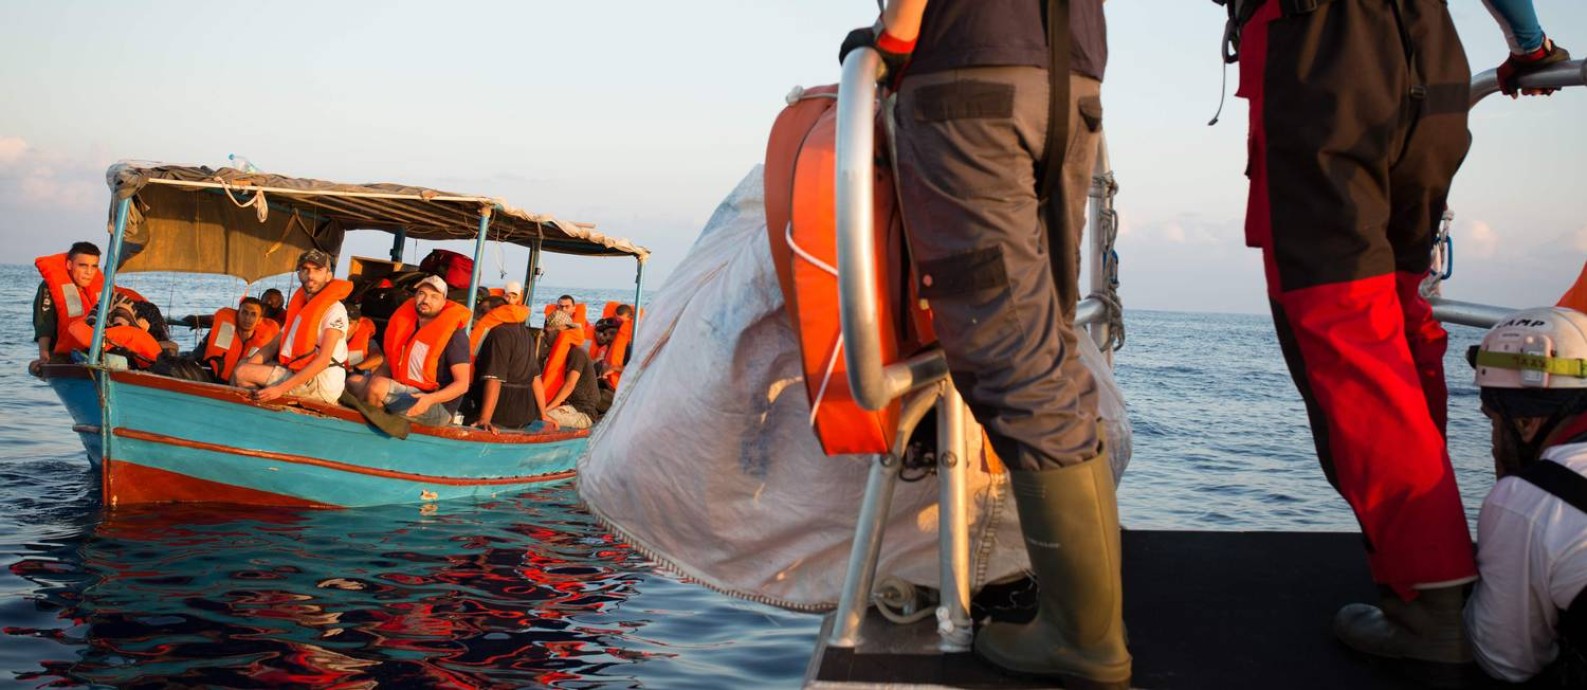 Migrantes são resgatados pelo navio Aquarius em setembro de 2018, antes da embarcação encerrar suas atividades após meses de tensão com o governo da Itália Foto: MAUD VEITH / AFP